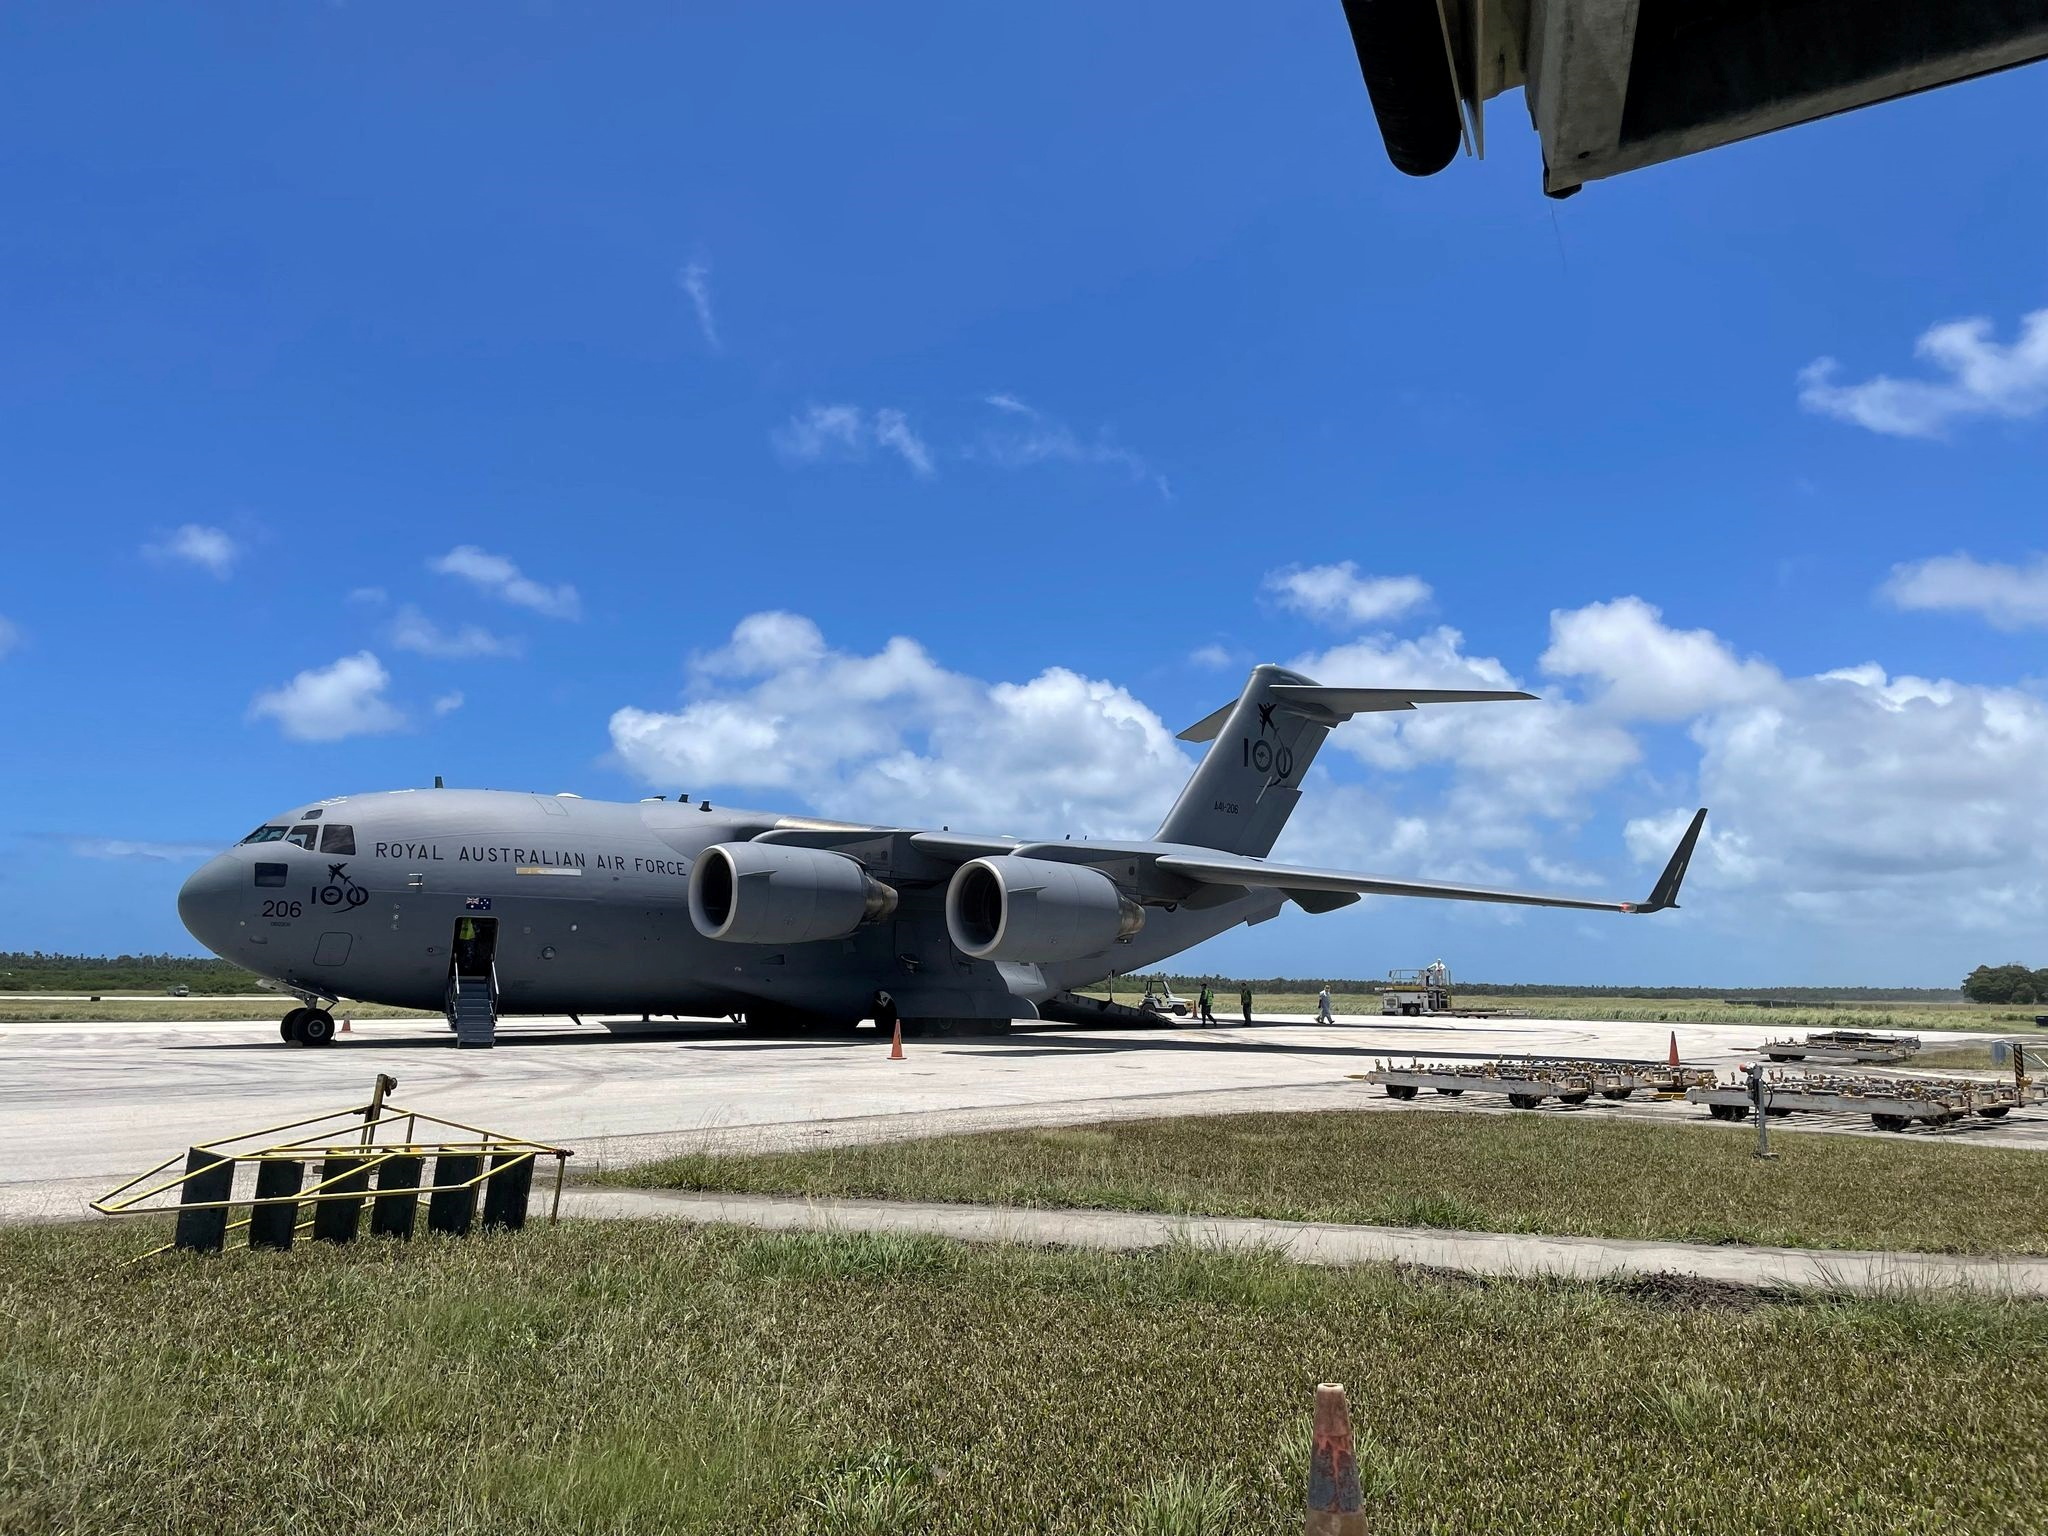 Llegaron a Tonga los primeros vuelos con ayuda humanitaria